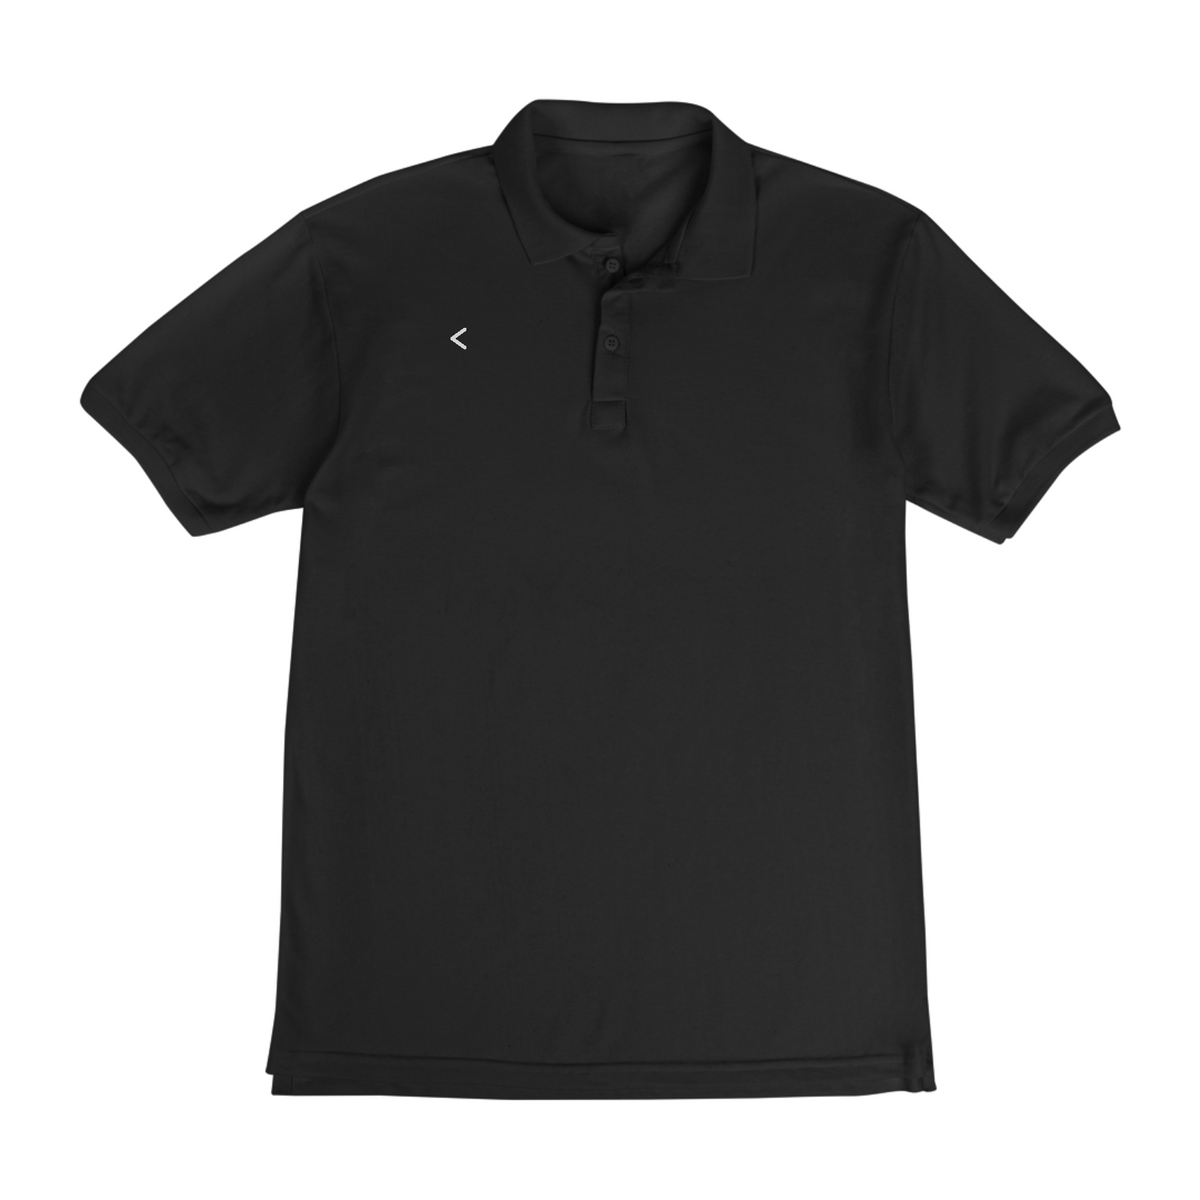 Nome do produto: Camiseta Minimalista Polo - Simbolo Less